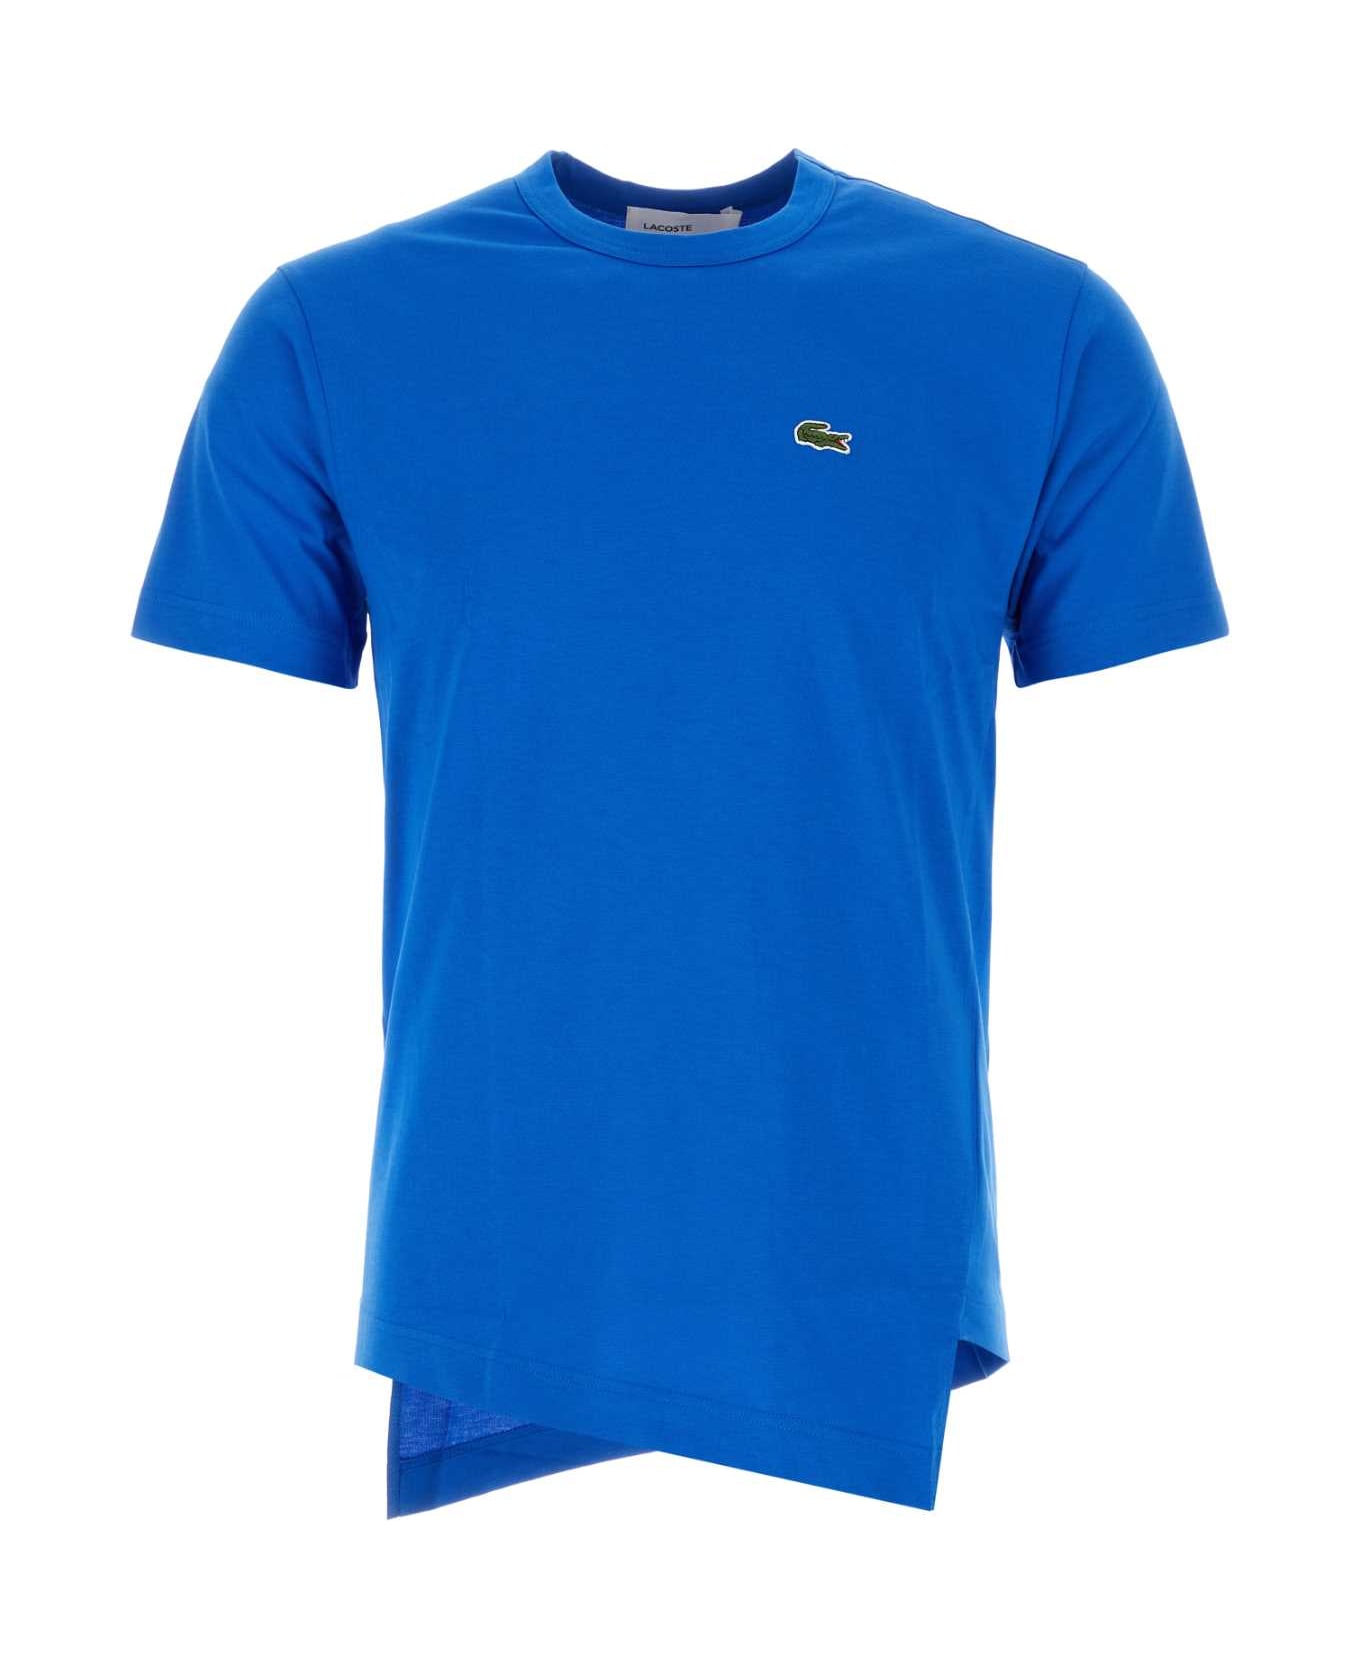 Comme des Garçons Shirt Cerulean Blue Cotton Comme Des Garã§ons Shirt X Lacoste T-shirt - BLUE シャツ